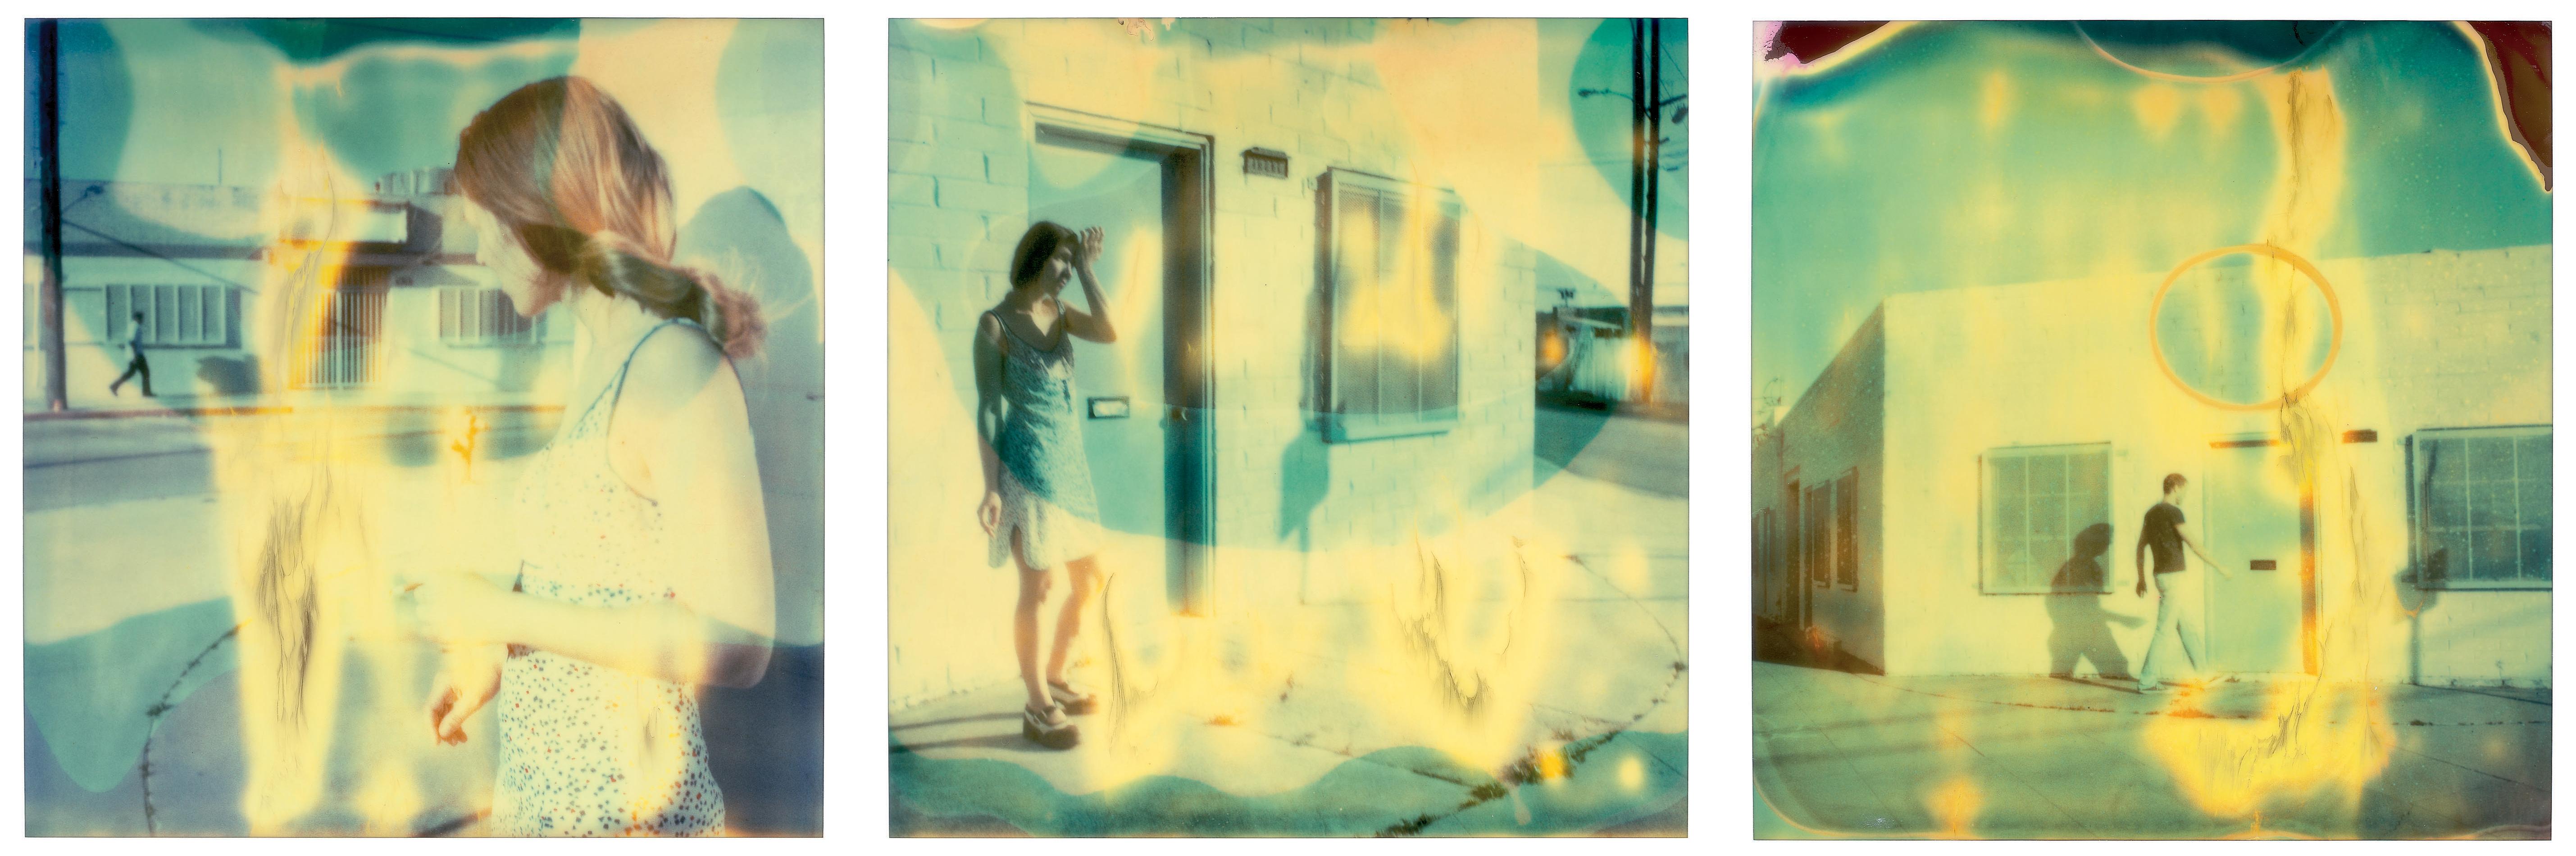 Stefanie Schneider Landscape Photograph – Streetcorner (Größer als Paradies)  Contemporary, Frau, Polaroid, Traum